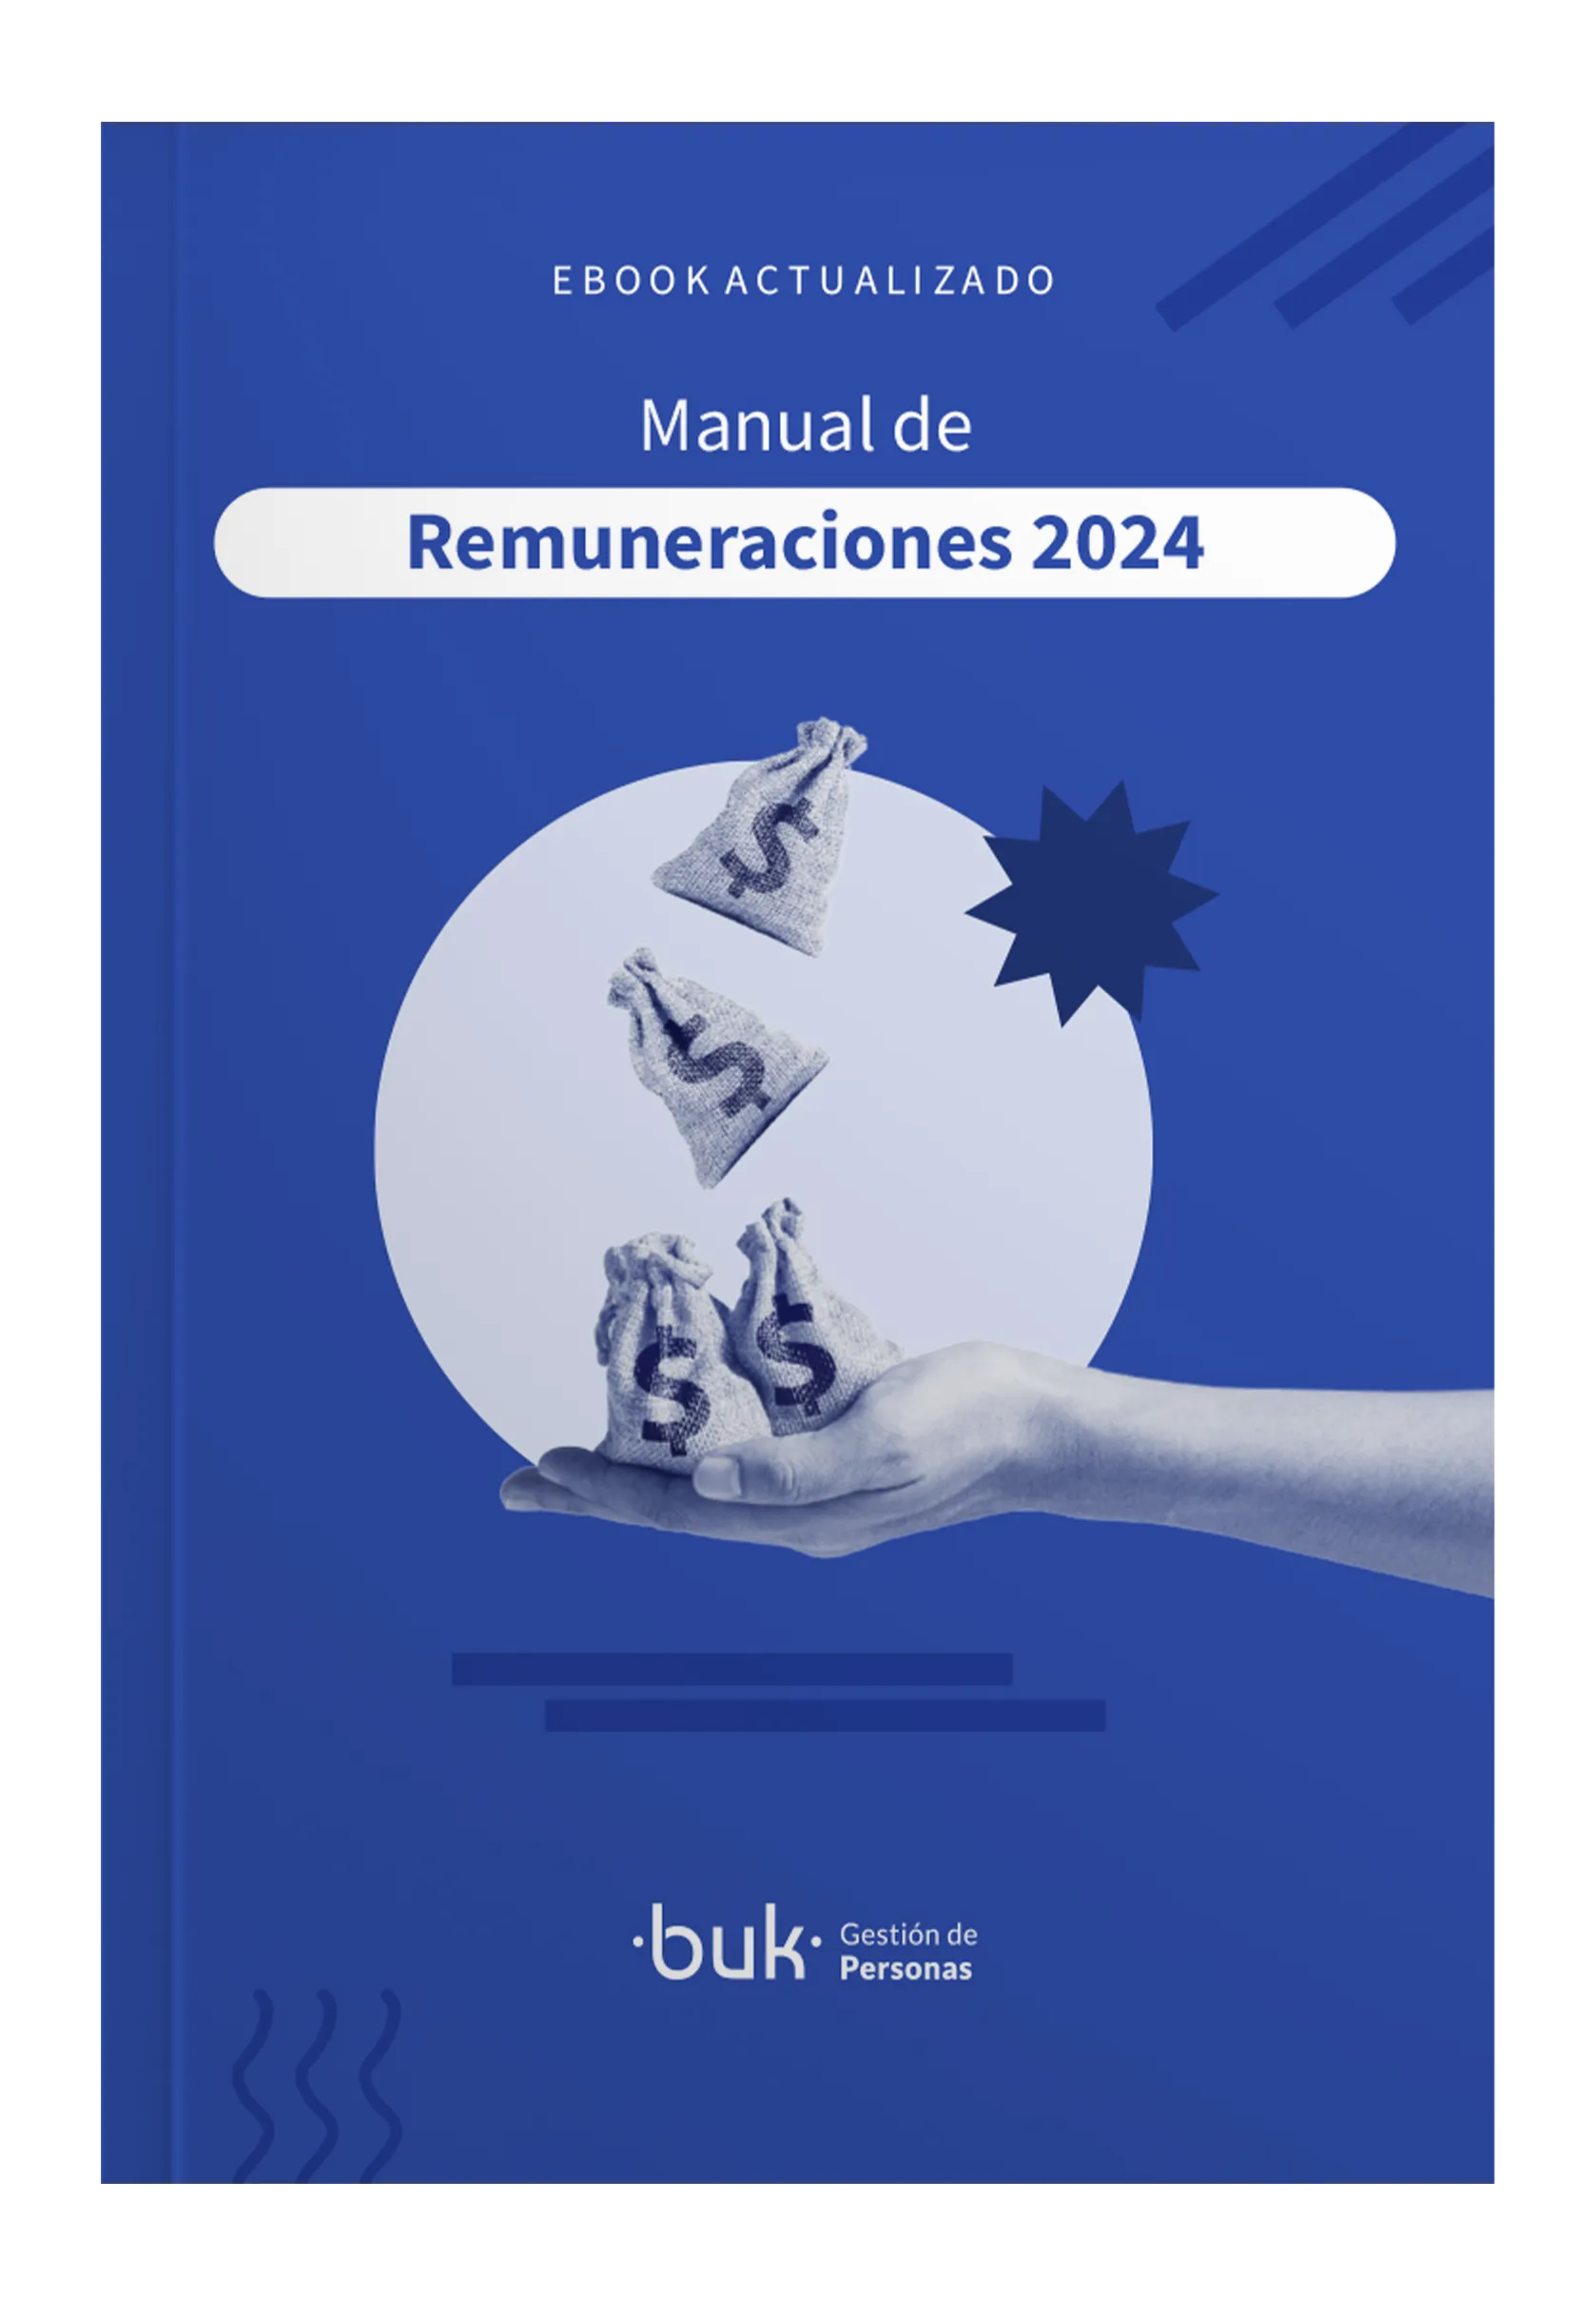 descarga el manual de remuneraciones 2024